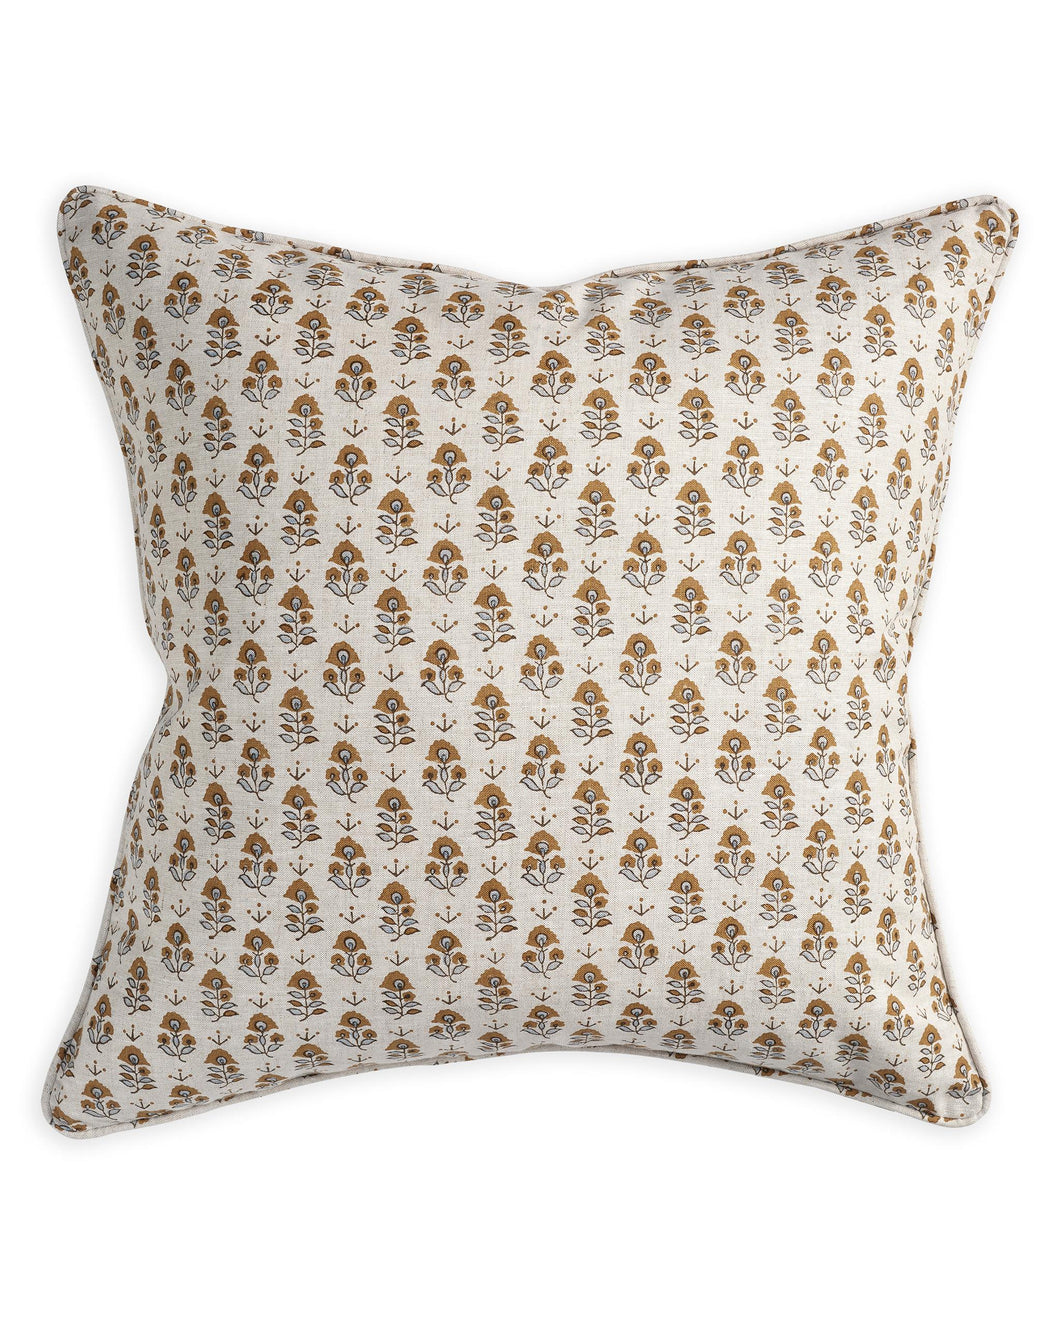 Kutch Sahara Pillow, 22 x 22